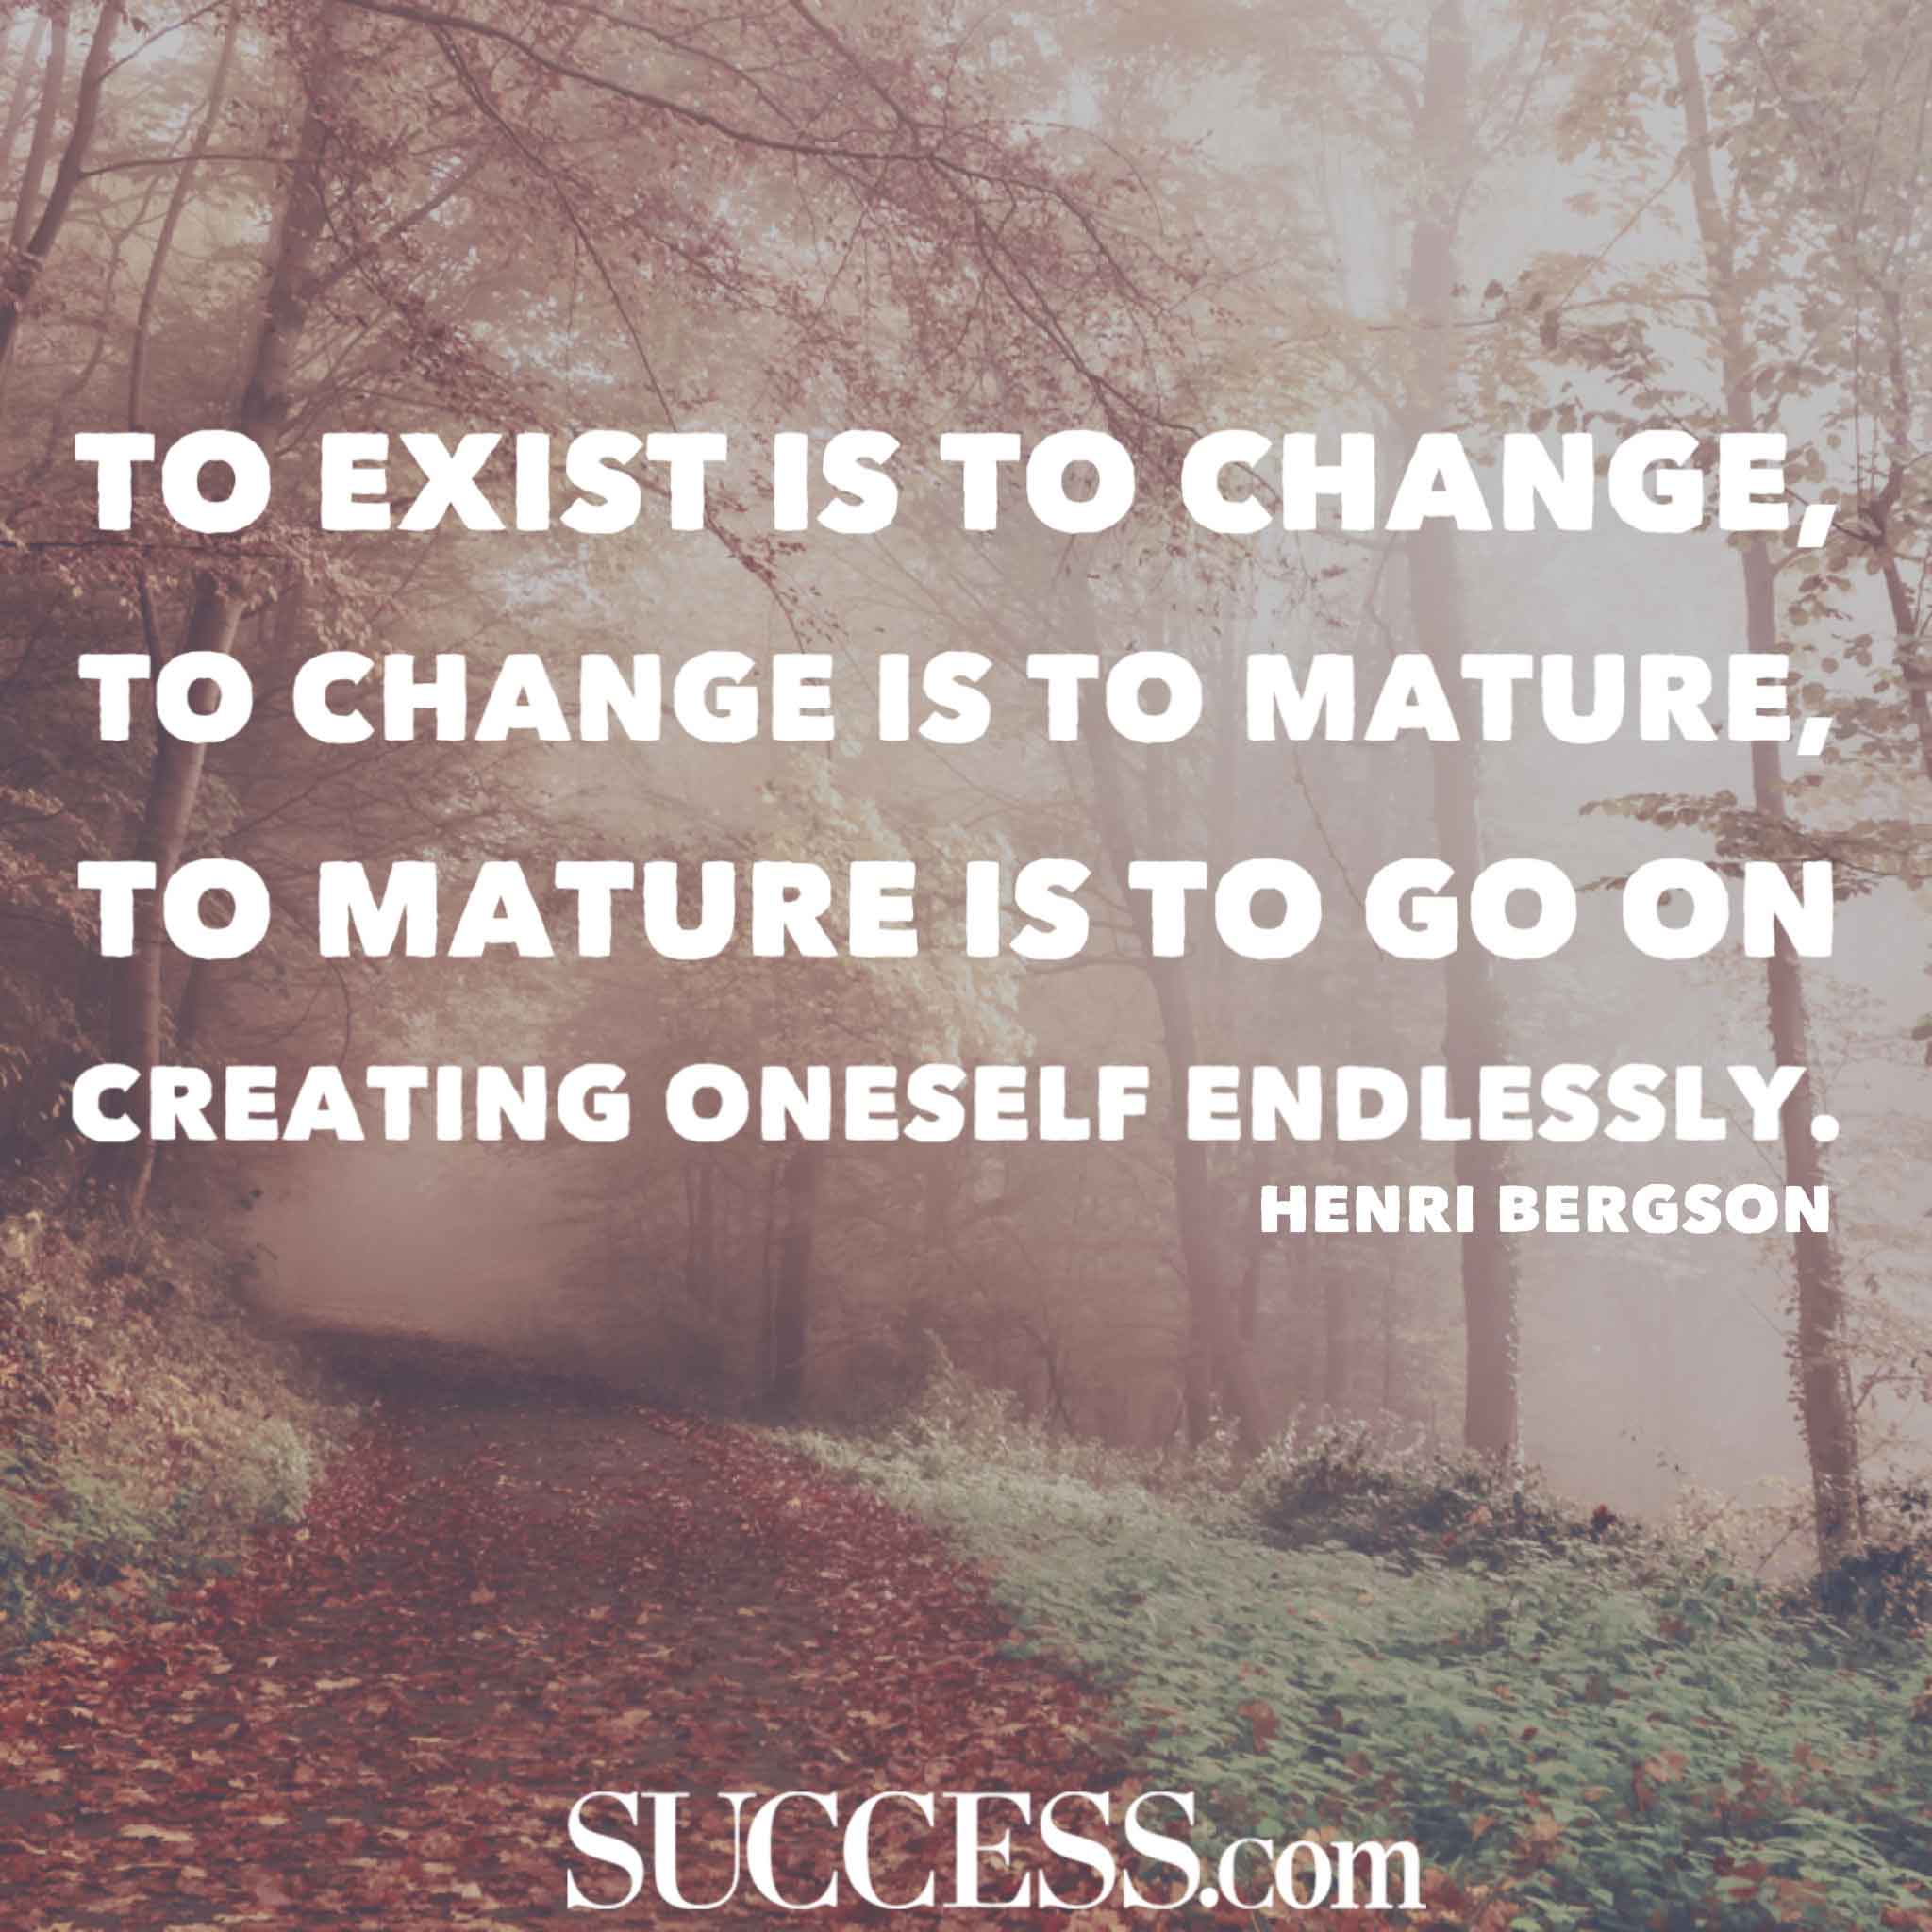 To Exist Is to Change. To exist is to change, to change is to mature, to mature is to go on creating oneself endlessly. Henri Bergson